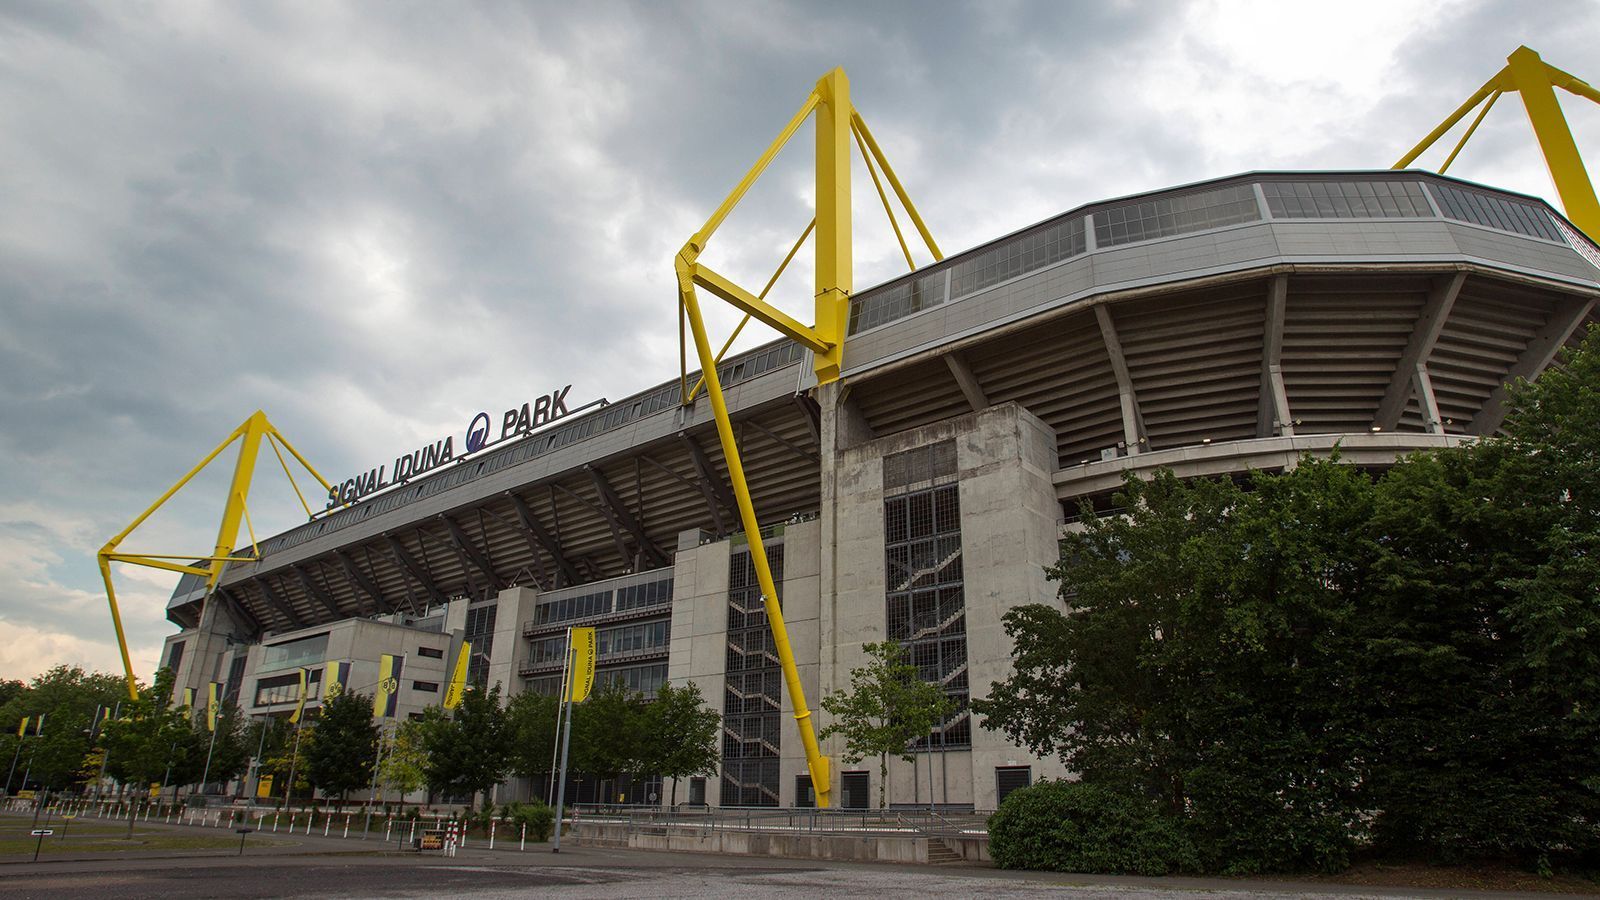 
                <strong>BVB Stadion Dortmund</strong><br>
                Mit über 81.000 Plätzen bietet kein Stadion in Deutschland mehr Plätze als der "Signal Iduna Park". Für das EM-Turnier im Sommer 2024 wird die Heimspielstätte von Borussia Dortmund allerdings in "BVB Stadion Dortmund" umbenannt. Weil Dortmund auch über die Grenzen der Bundesrepublik als "BVB" bekannt ist, entschloss man sich, das Kürzel in den Stadionnamen einzufügen. Übrigens: Für die EM wird die Platzanzahl auf rund 61.000 reduziert, da es während des Turniers keine Stehplätze geben wird.
              